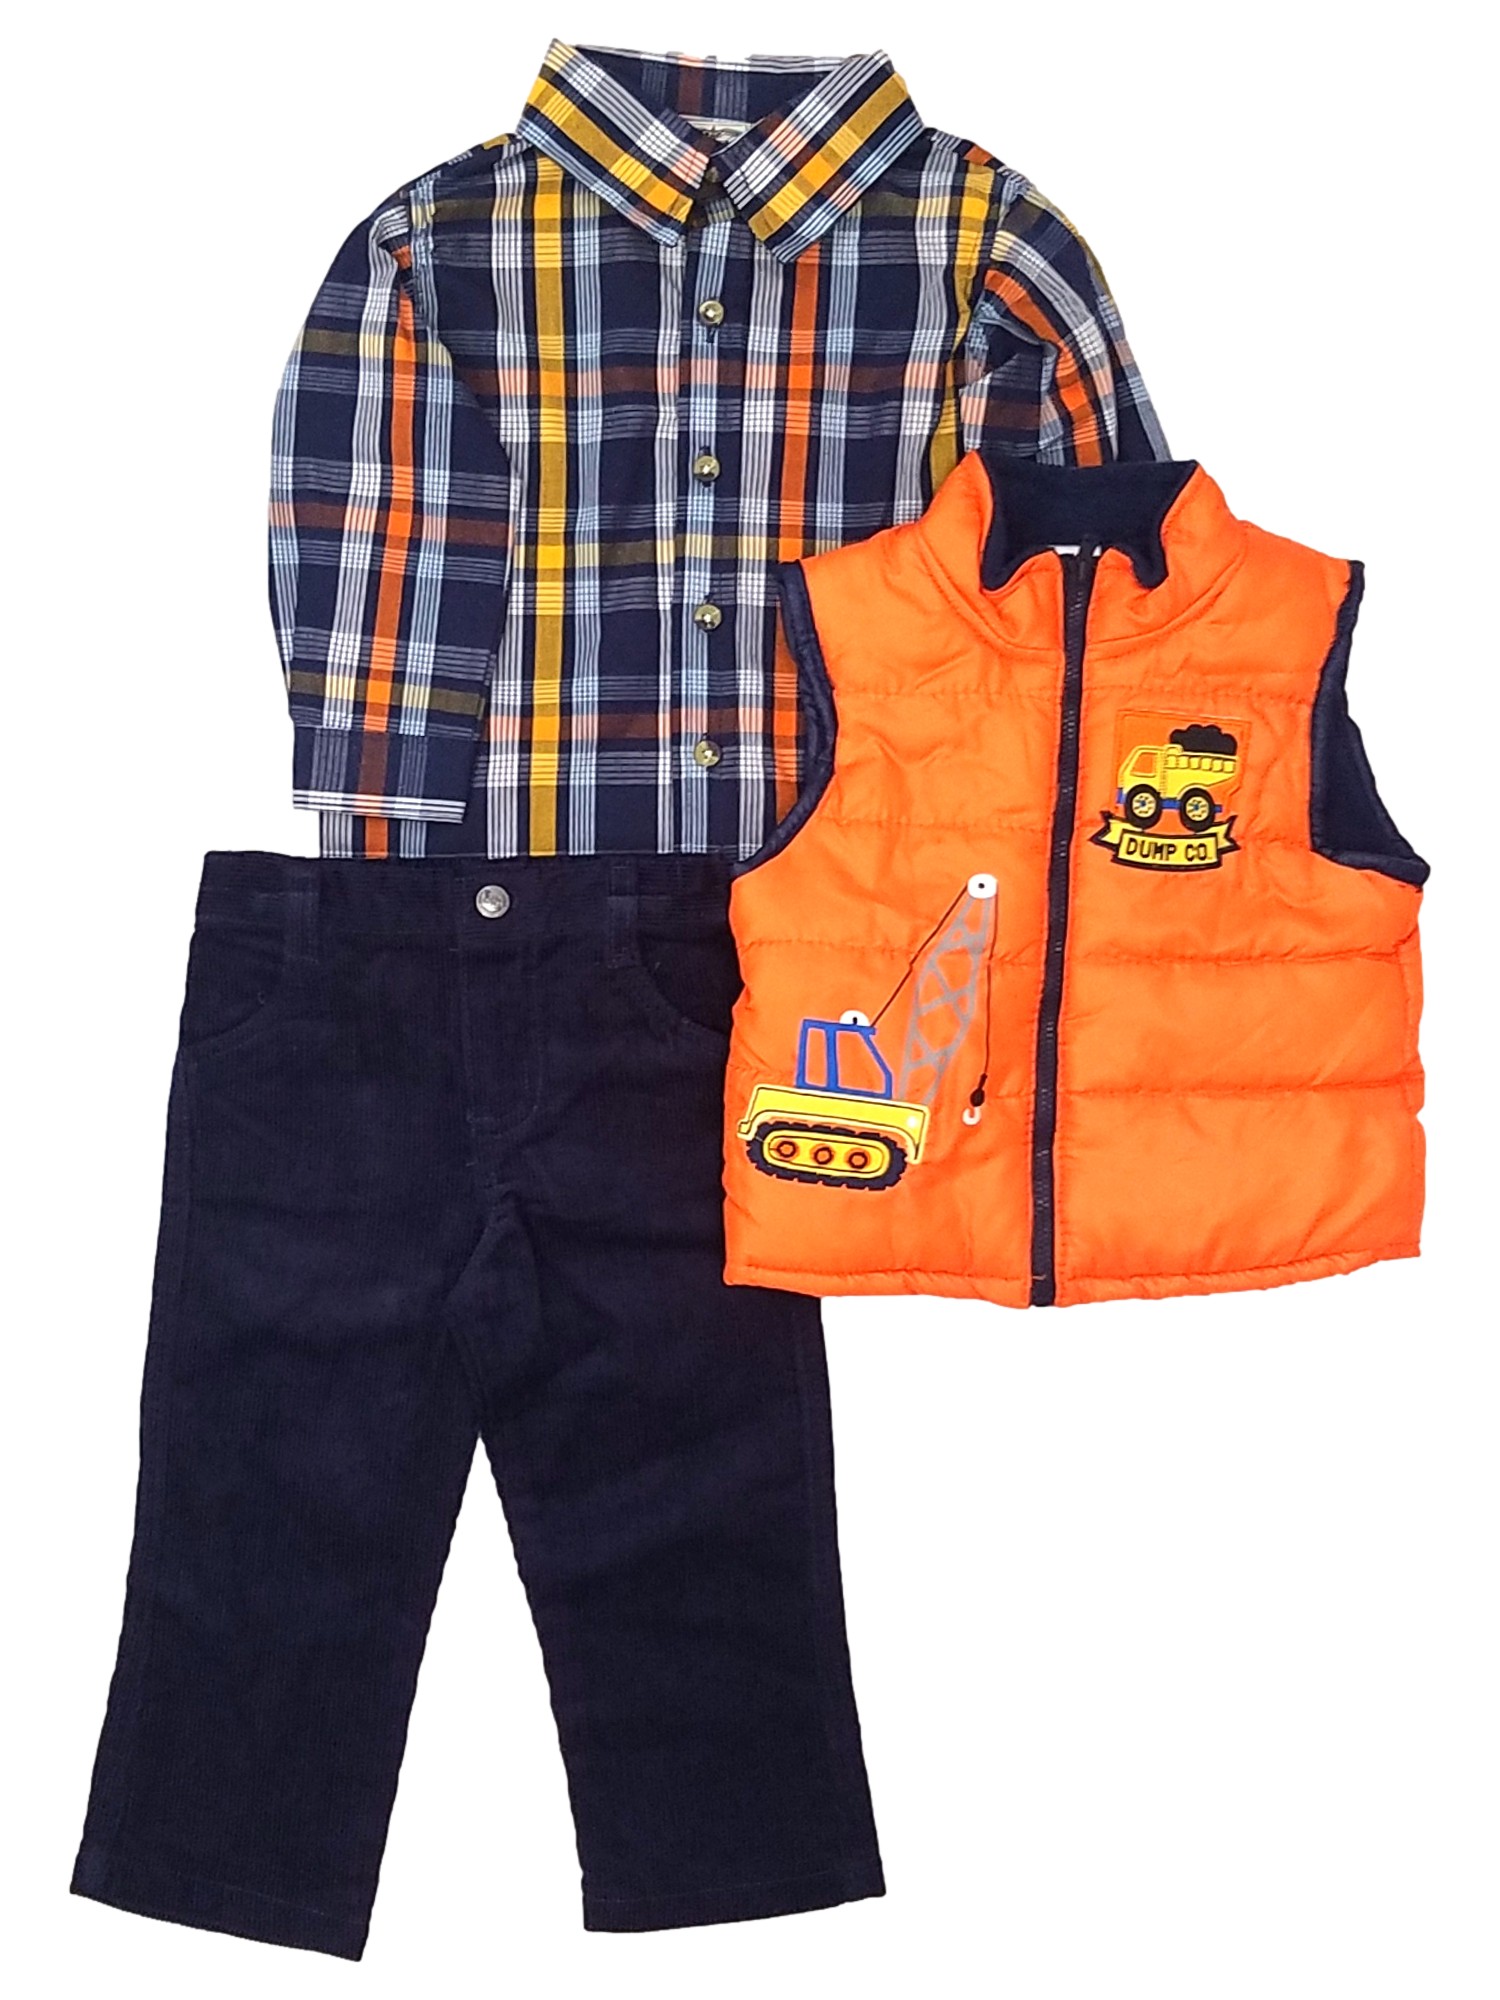 Little Rebels Little Rebel Infant Boys 3 Piece Orange & Navy Vest Shirt & Pants Set 24 Months